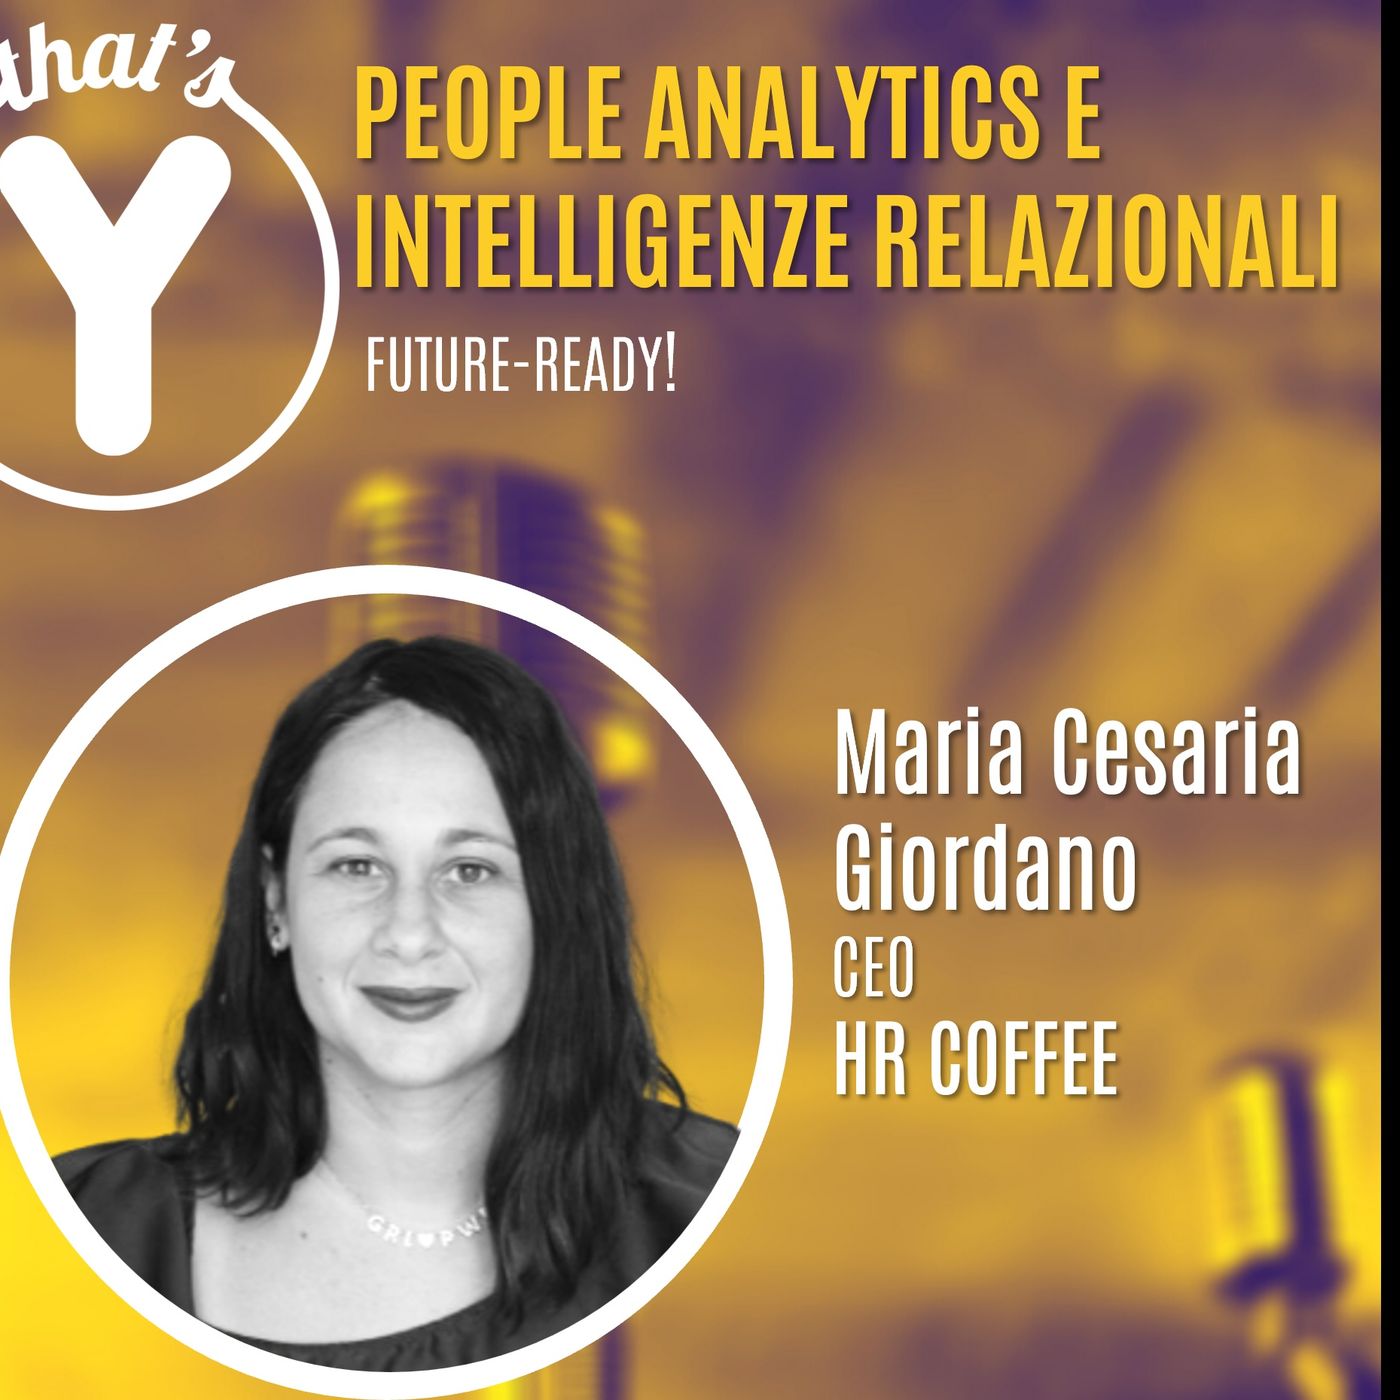 "People Analytics e Intelligenze Relazionali" M.Cesaria Giordano HR COFFEE [Future-Ready!]